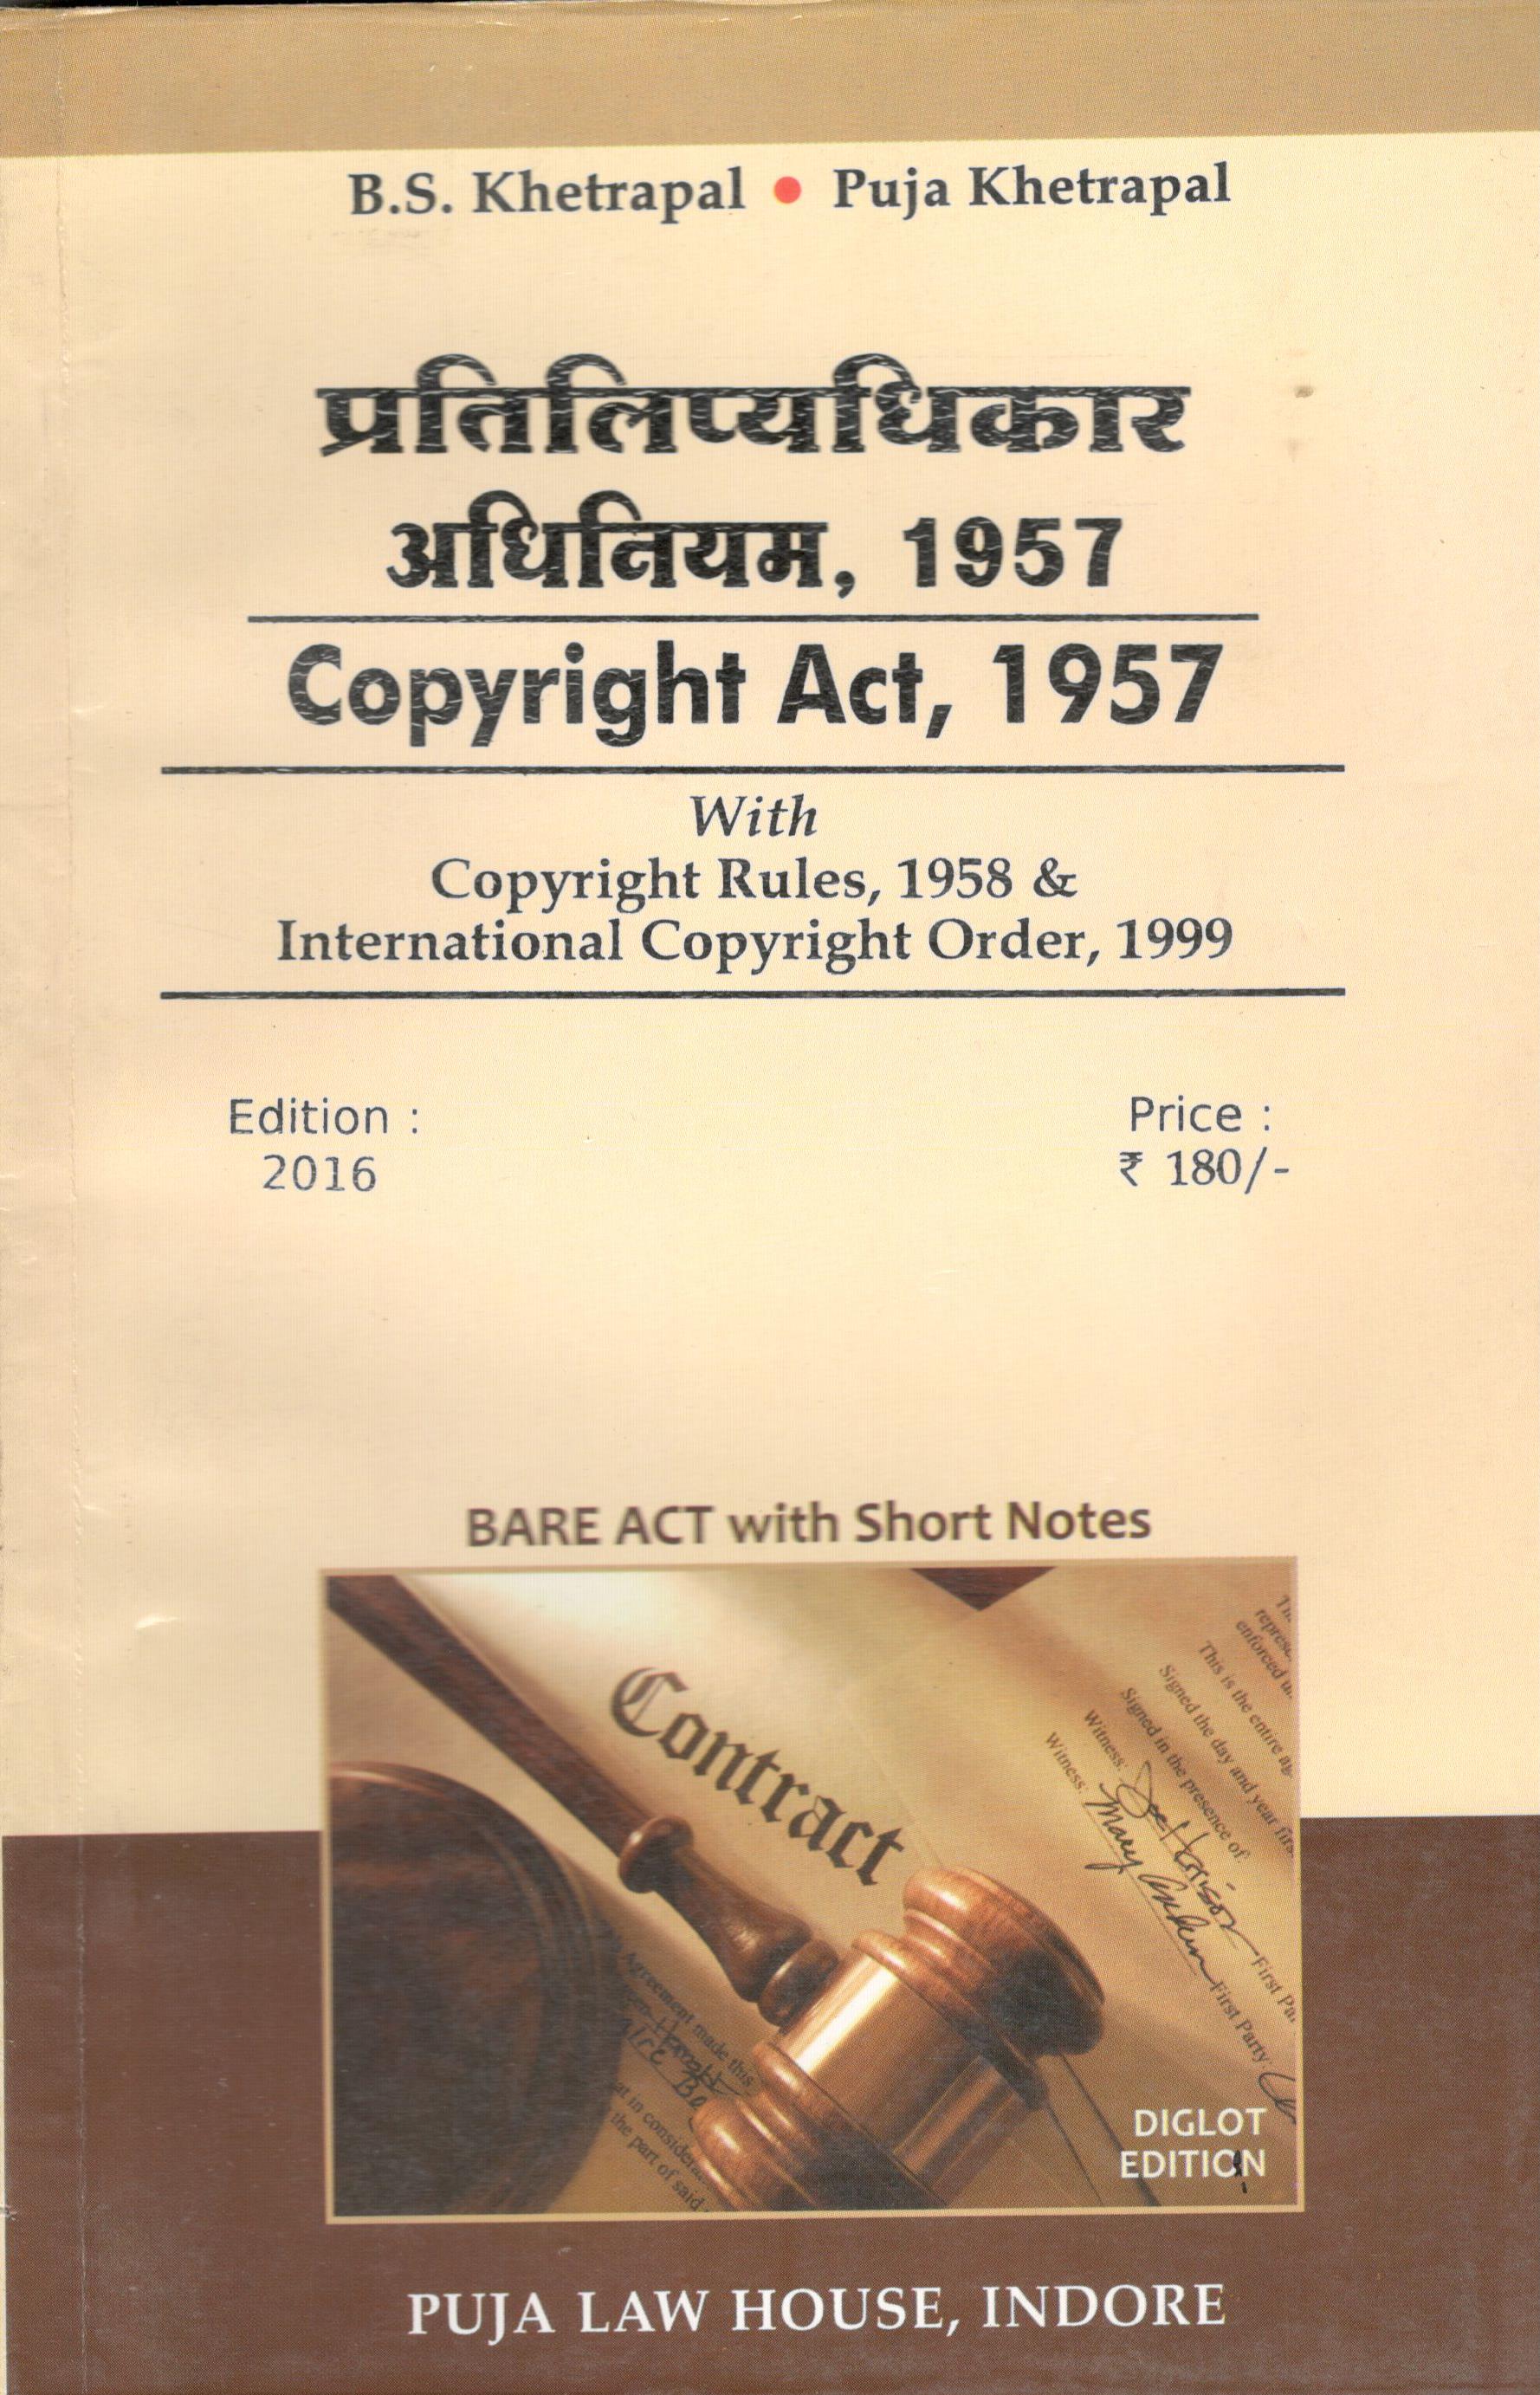 प्रतिलिप्यधिकार अधिनियम, 1957 / Copyright Act, 1957